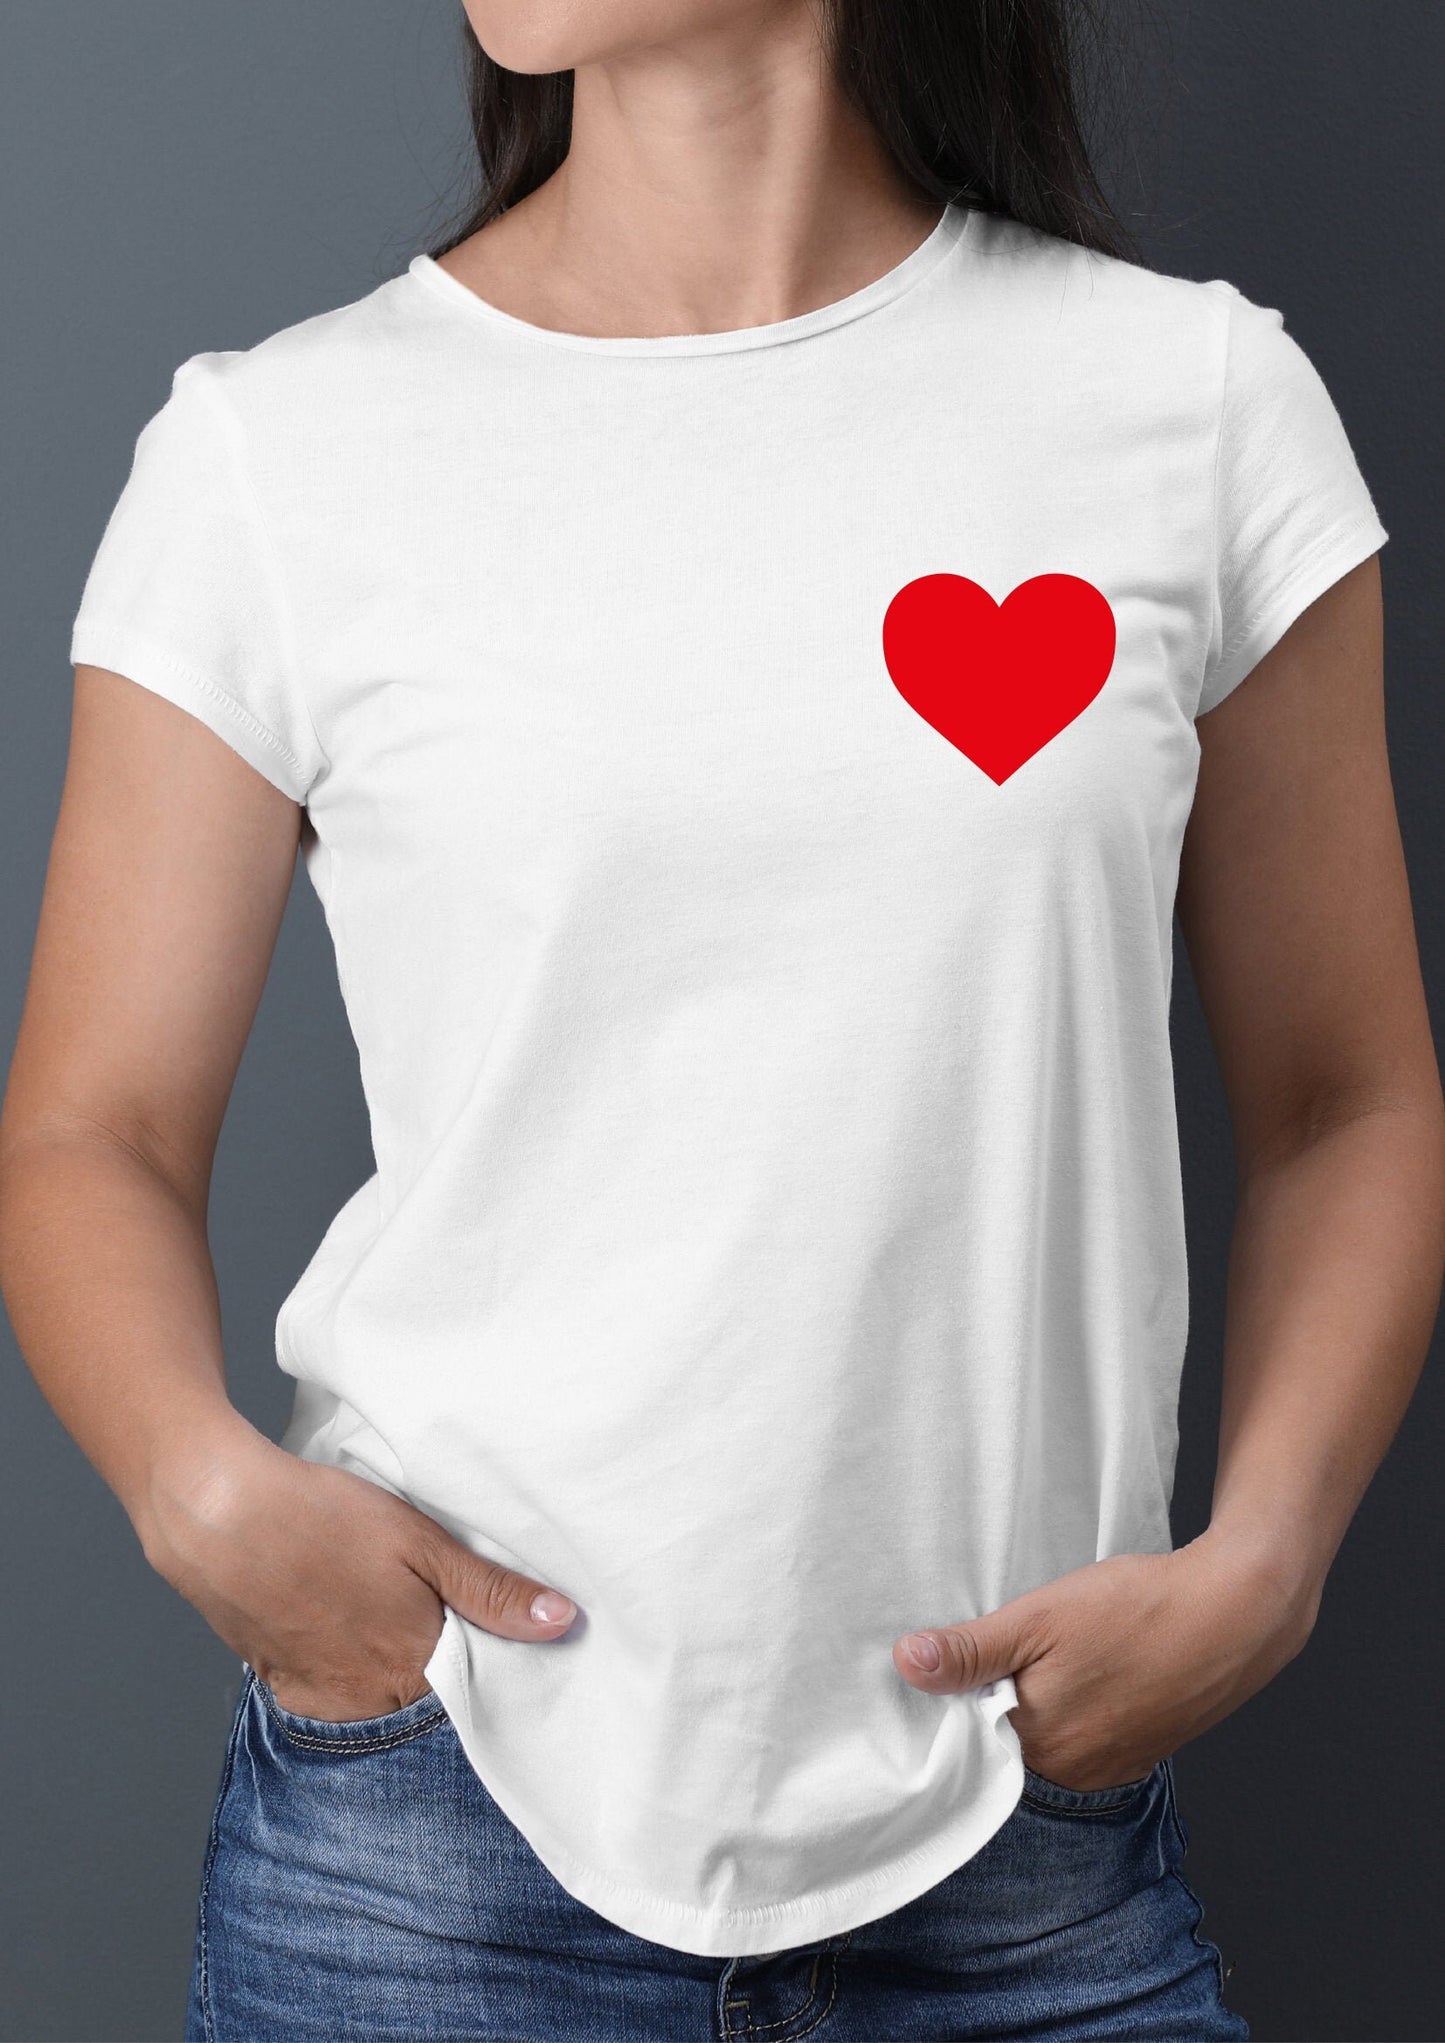 Red Heart T-Shirt - Love Heart Tee